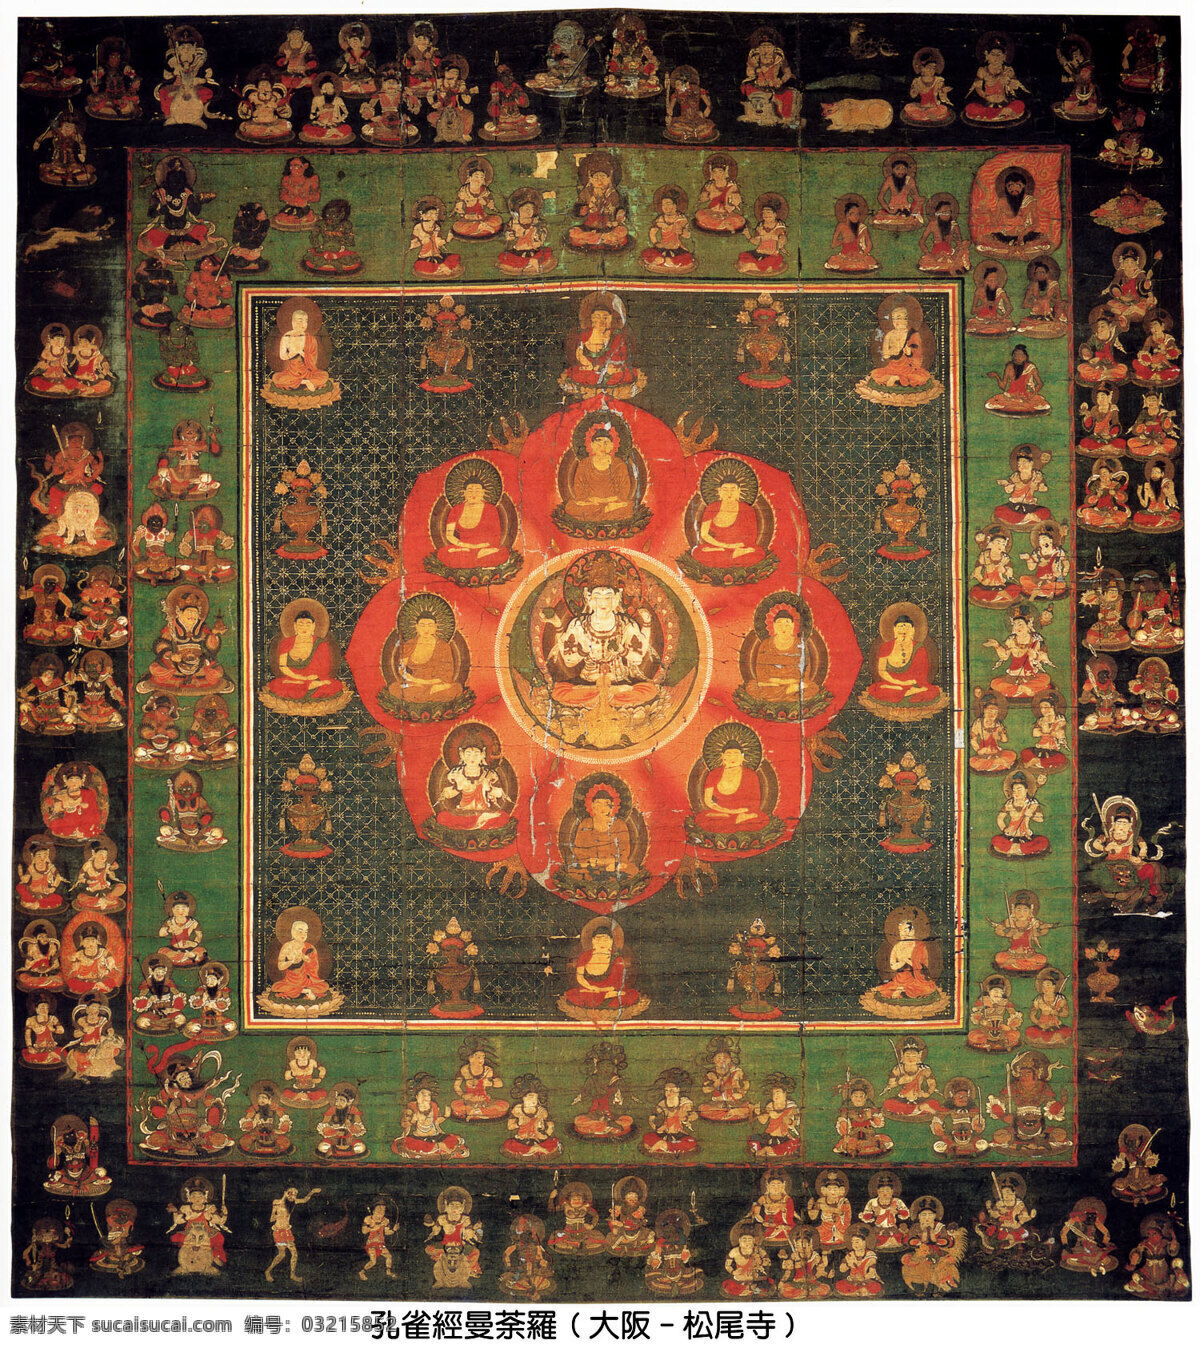 佛教 日本 文化艺术 宗教信仰 孔雀 曼荼罗 设计素材 模板下载 孔雀经曼荼罗 孔雀明王 东密